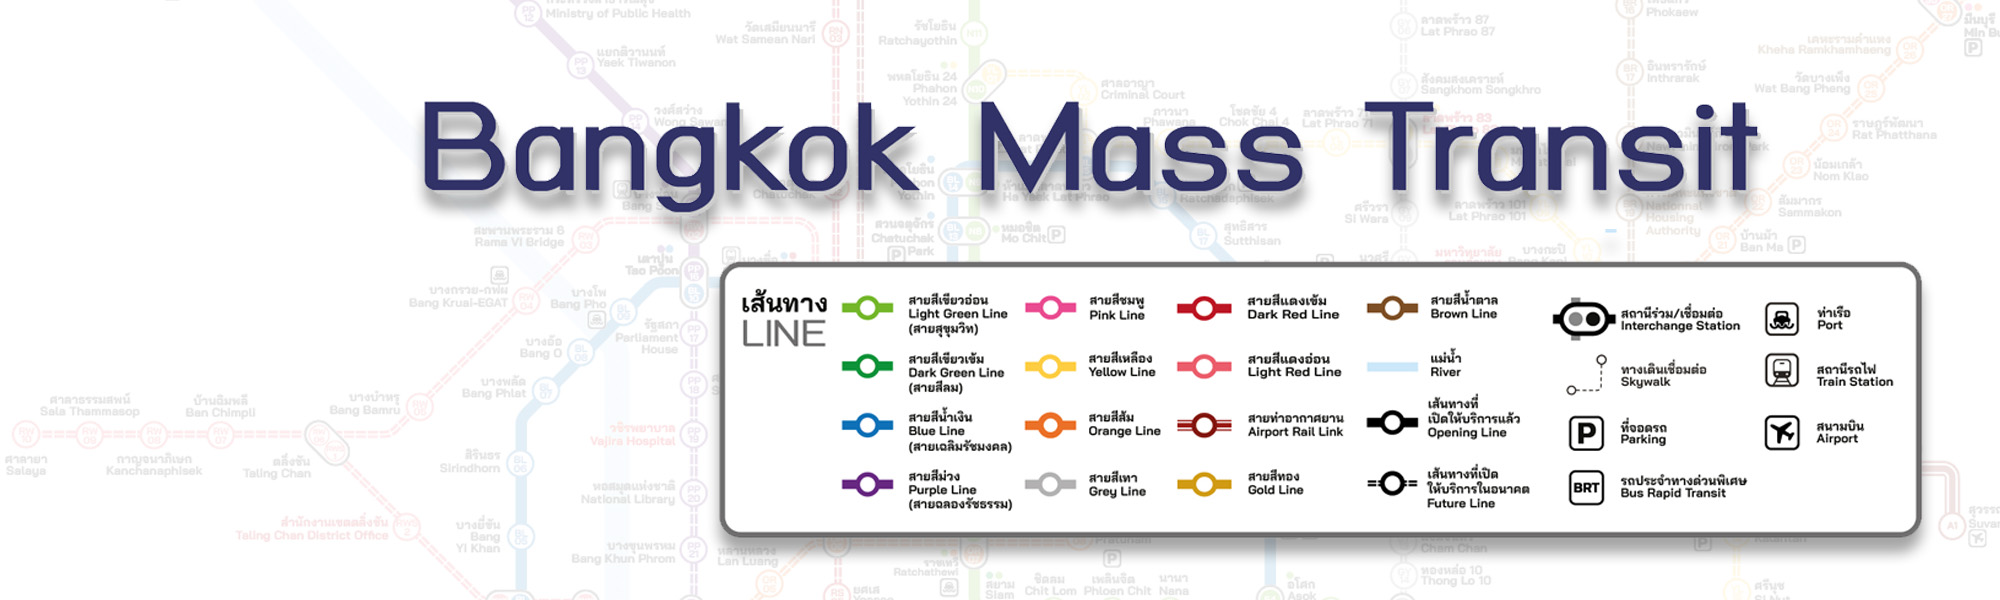 Bangkok Mass Transit Map